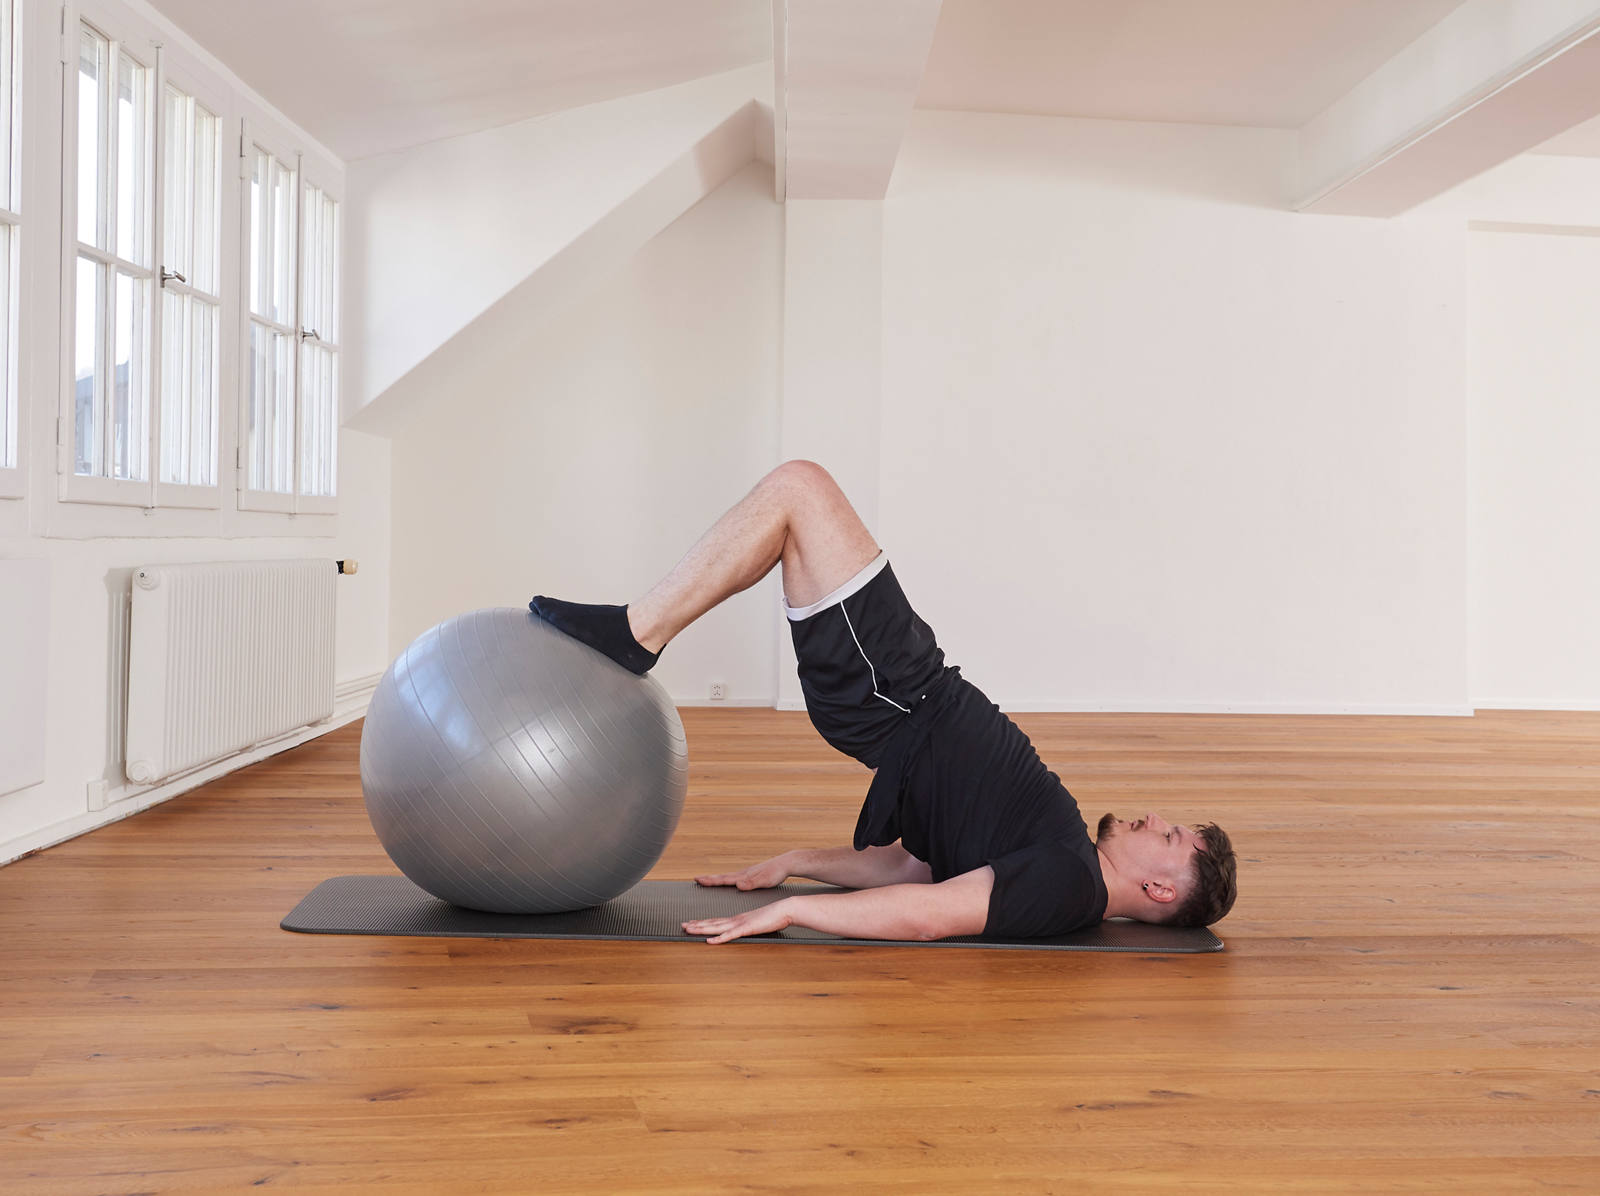 Gymnastikball – Beinrückseite und Po: Position 2